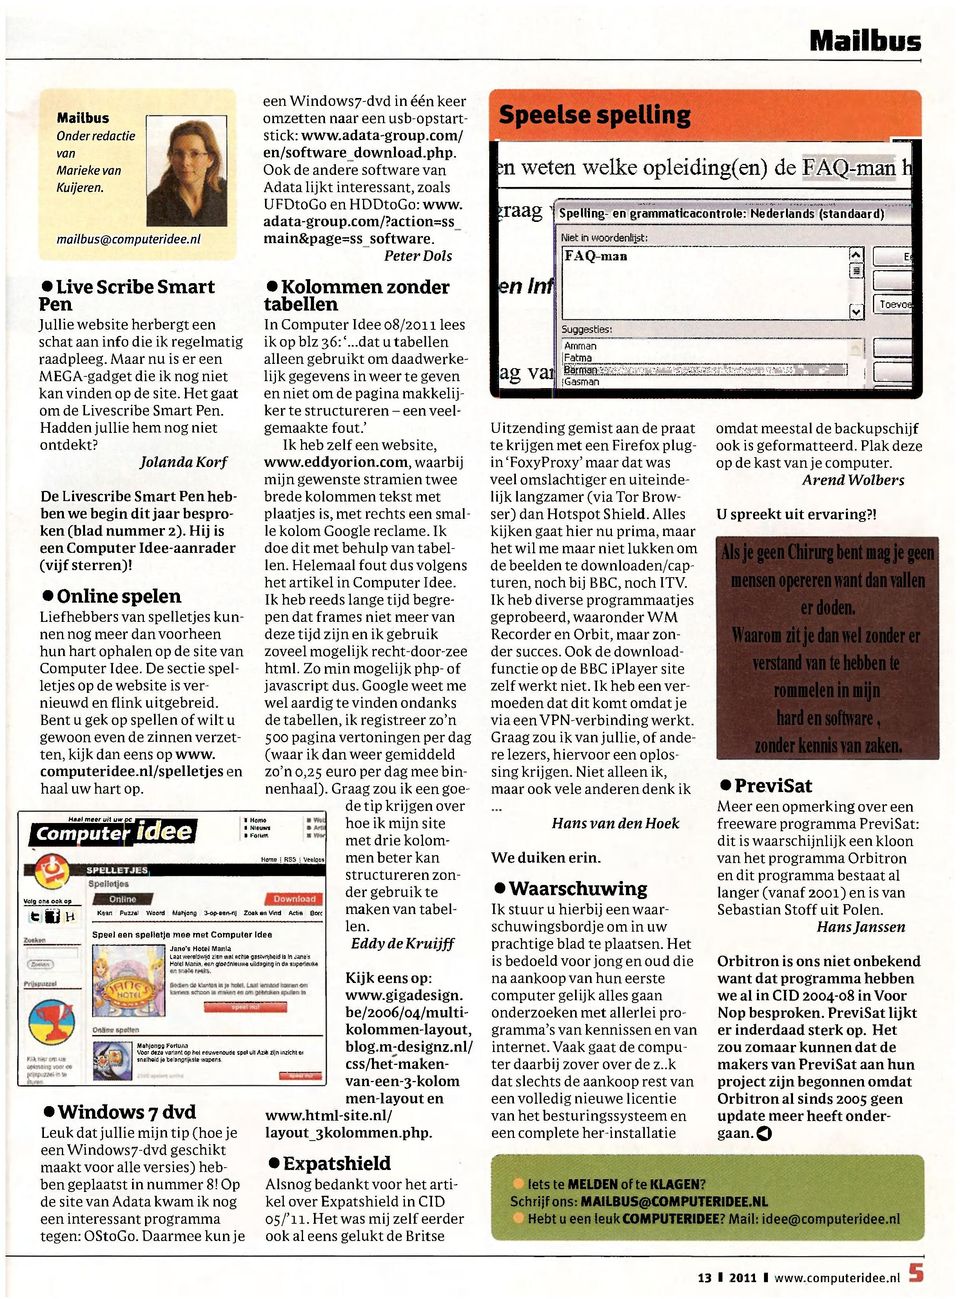 Jolanda Korf De Livescribe Smart Pen hebben we begin dit jaar besproken (blad nummer 2). Hij is een Computer Idee-aanrader (vijf sterren)!